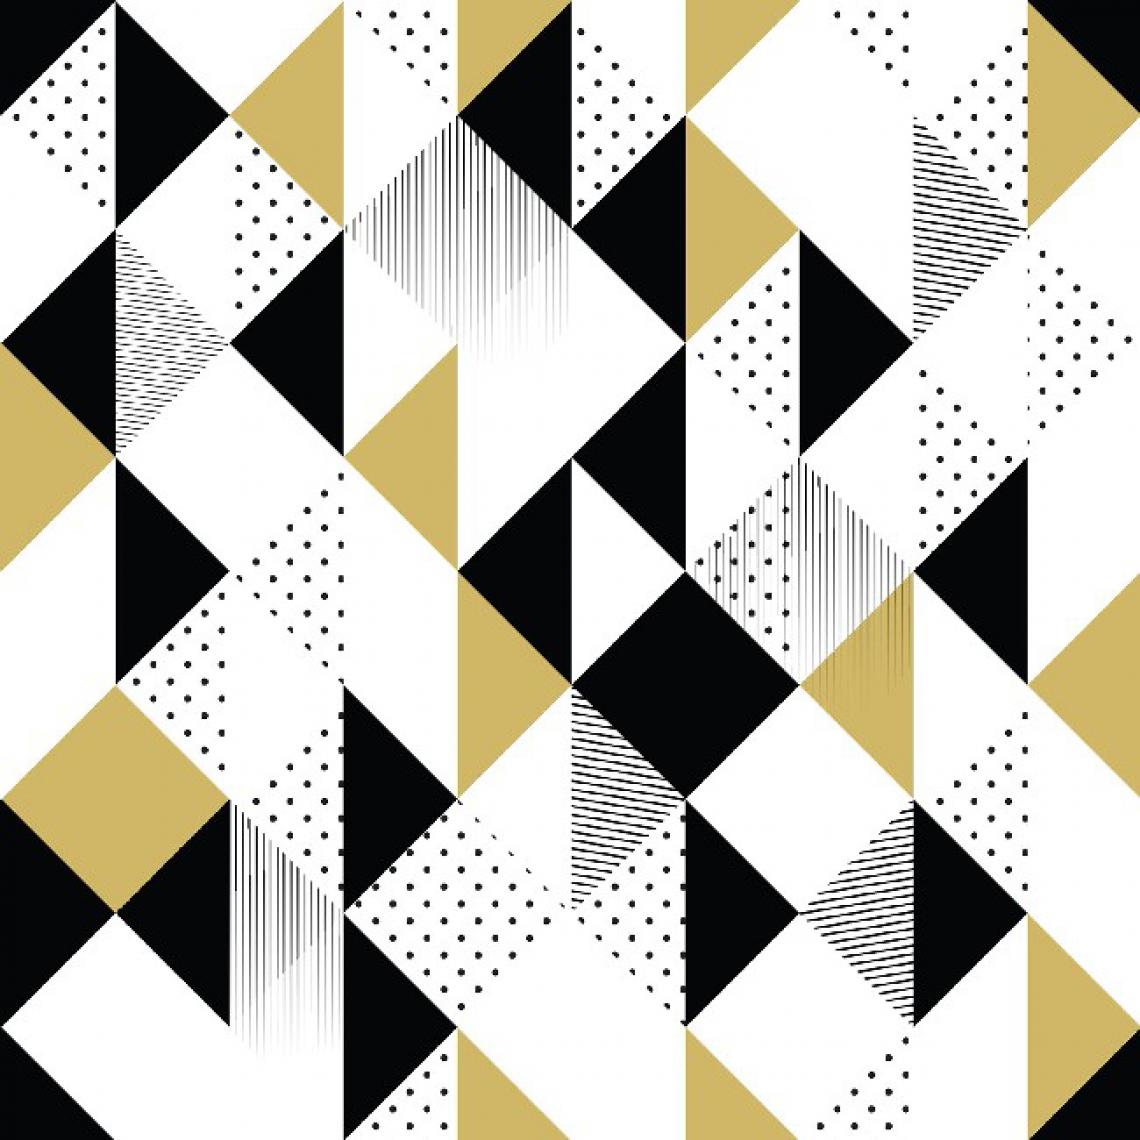 Homemania - HOMEMANIA Tapis Imprimé Geometric Patterns - Géométrique - Décoration de Maison - Antidérapant - Pour Salon, séjour, chambre à coucher - Multicolore en Polyester, Coton, 80 x 50 cm - Tapis